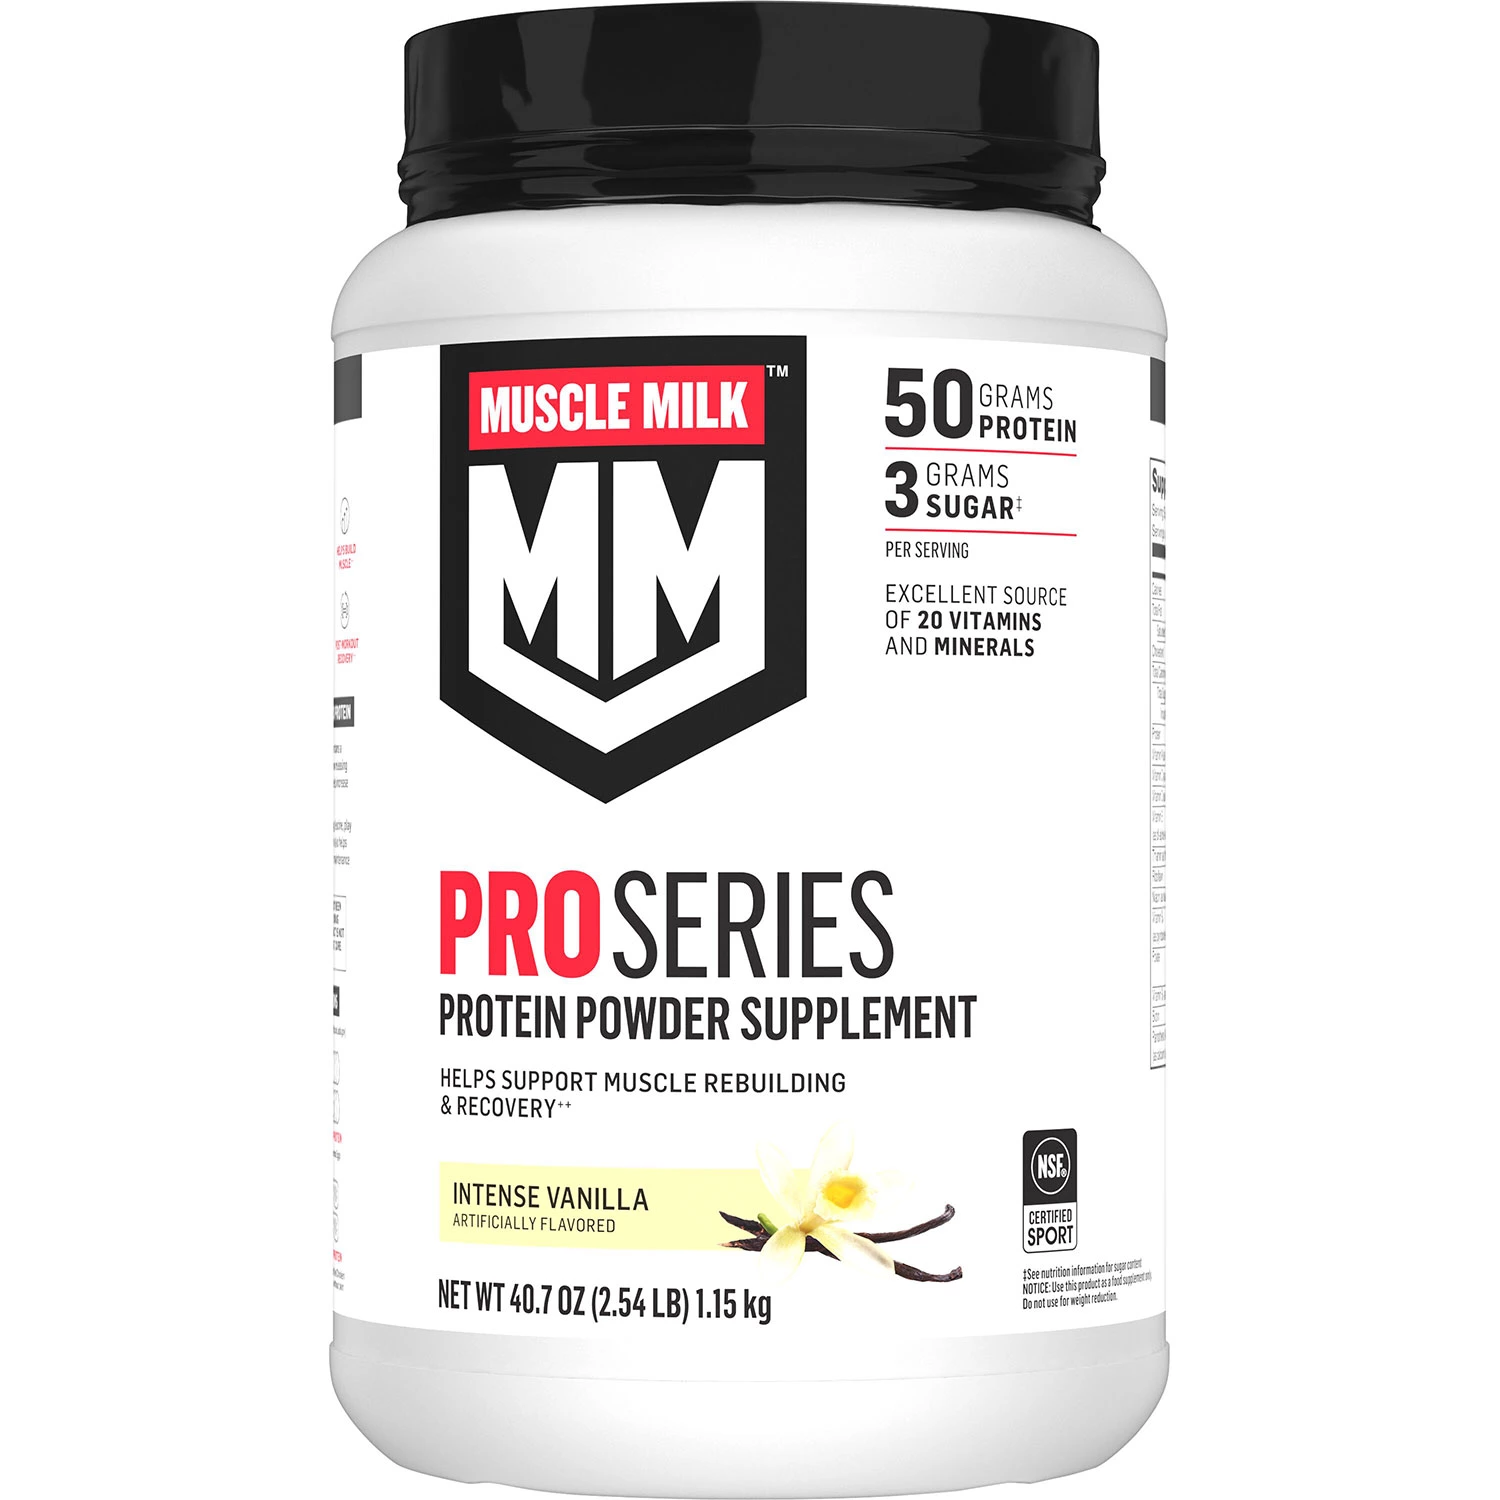 Muscle Milk Pro Series Protein Powder Supplement Intense Vanilla (40.7 oz.)